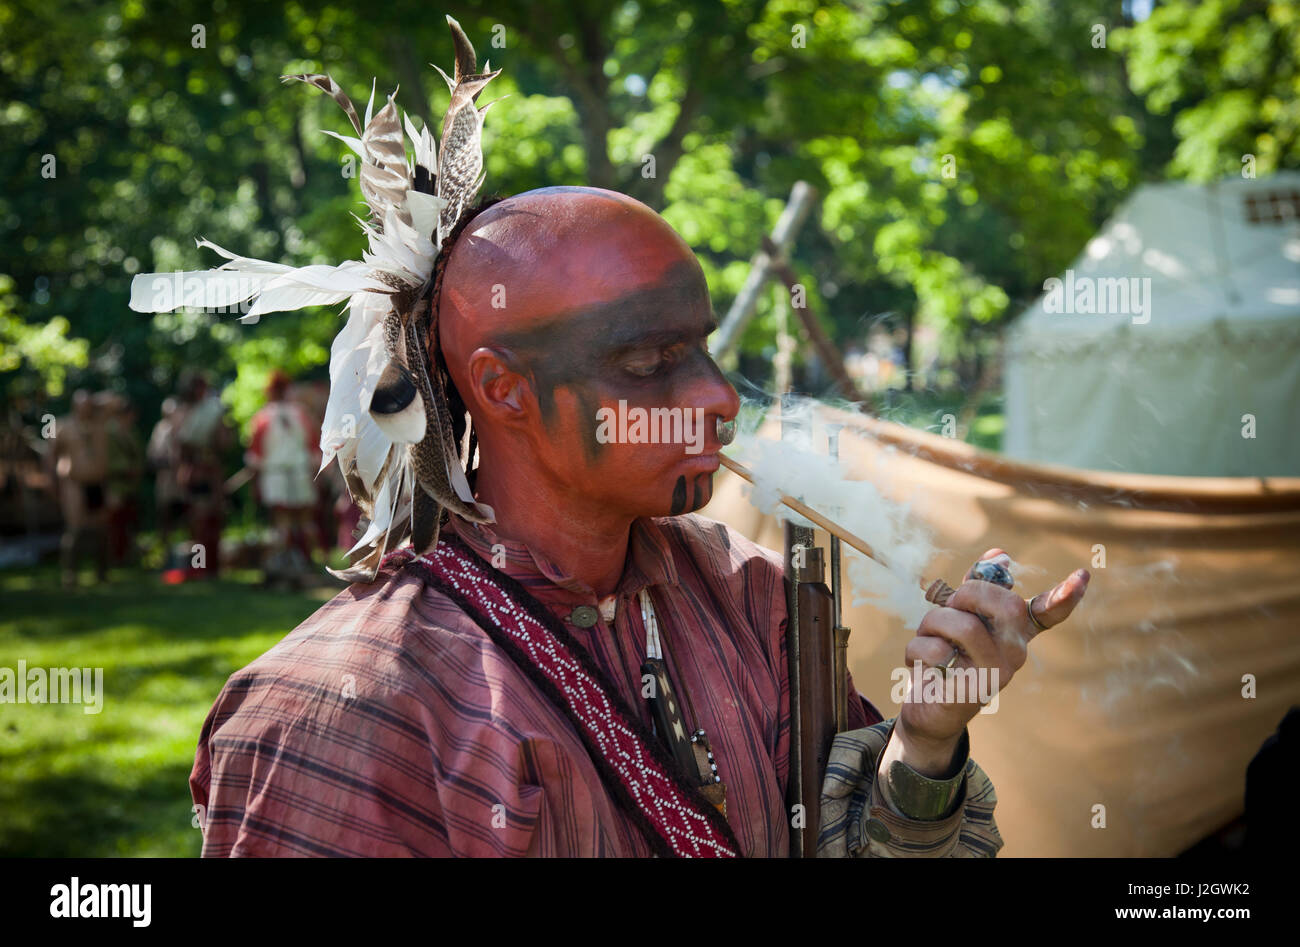 Indien de l'Amérique du nord-est de Tribes fume une pipe pendant la guerres indiennes Français Fort Niagara, NY de reconstitution Banque D'Images